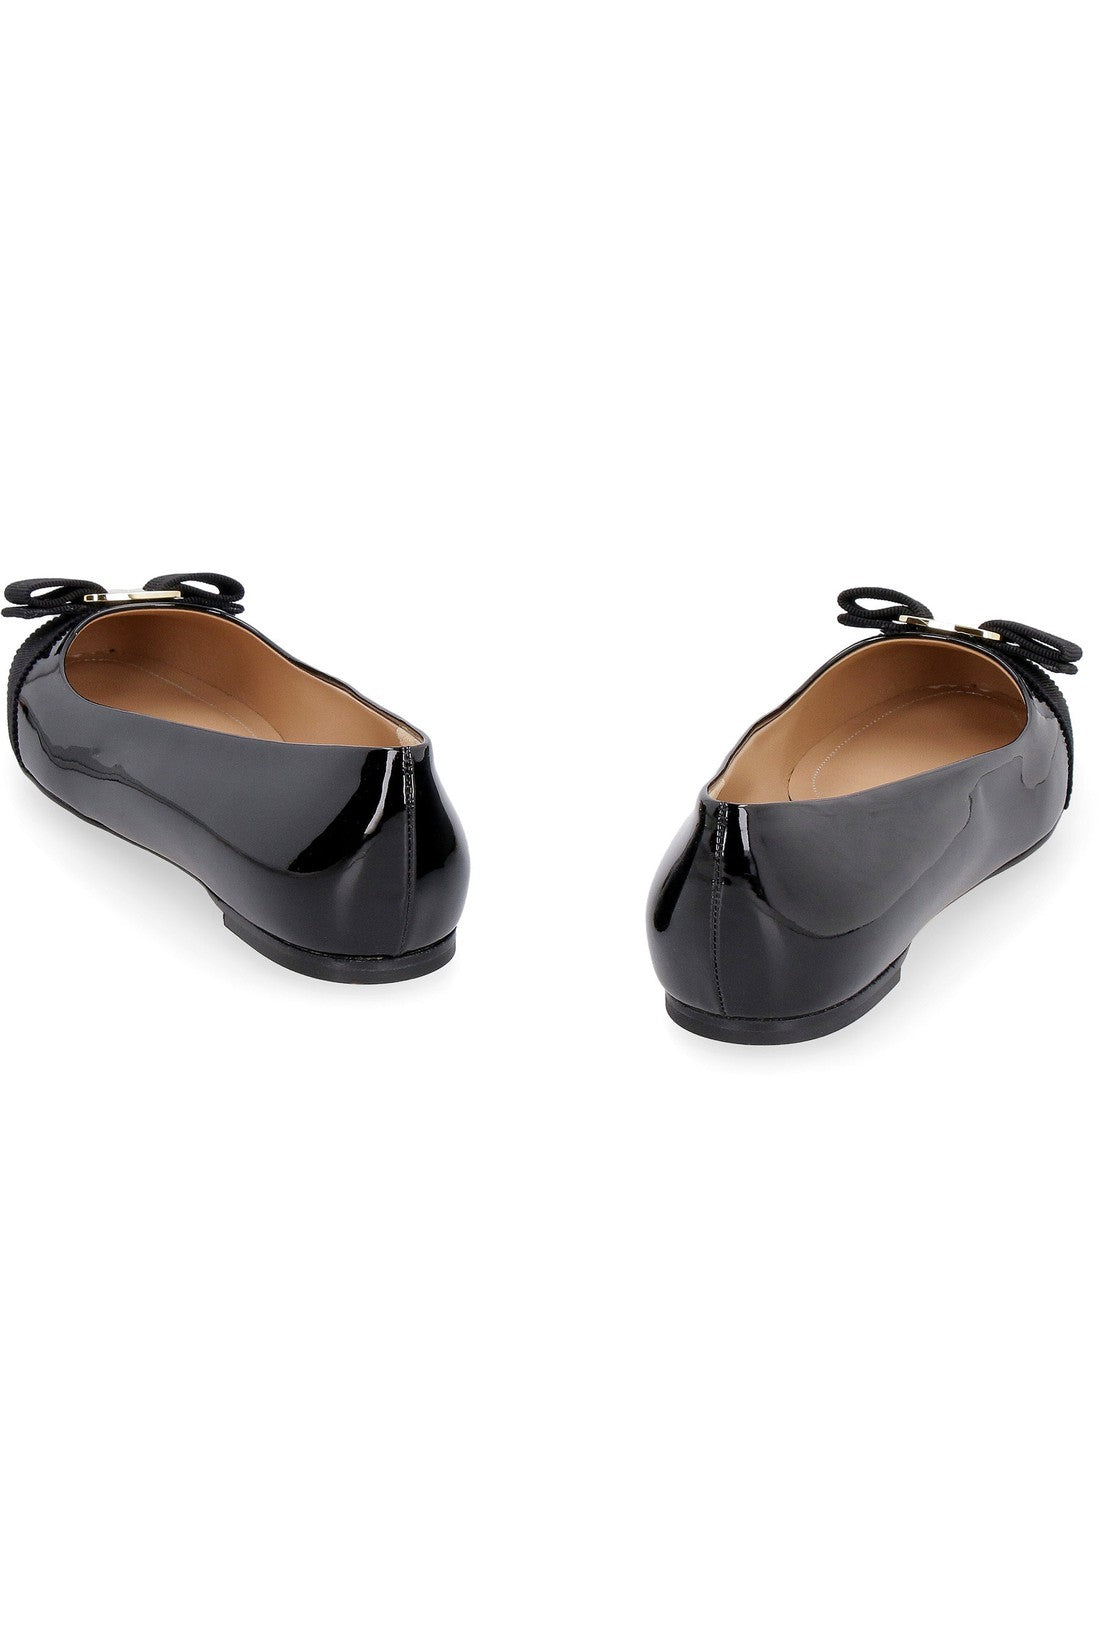 FERRAGAMO-OUTLET-SALE-Varina patent leather ballet flats-ARCHIVIST